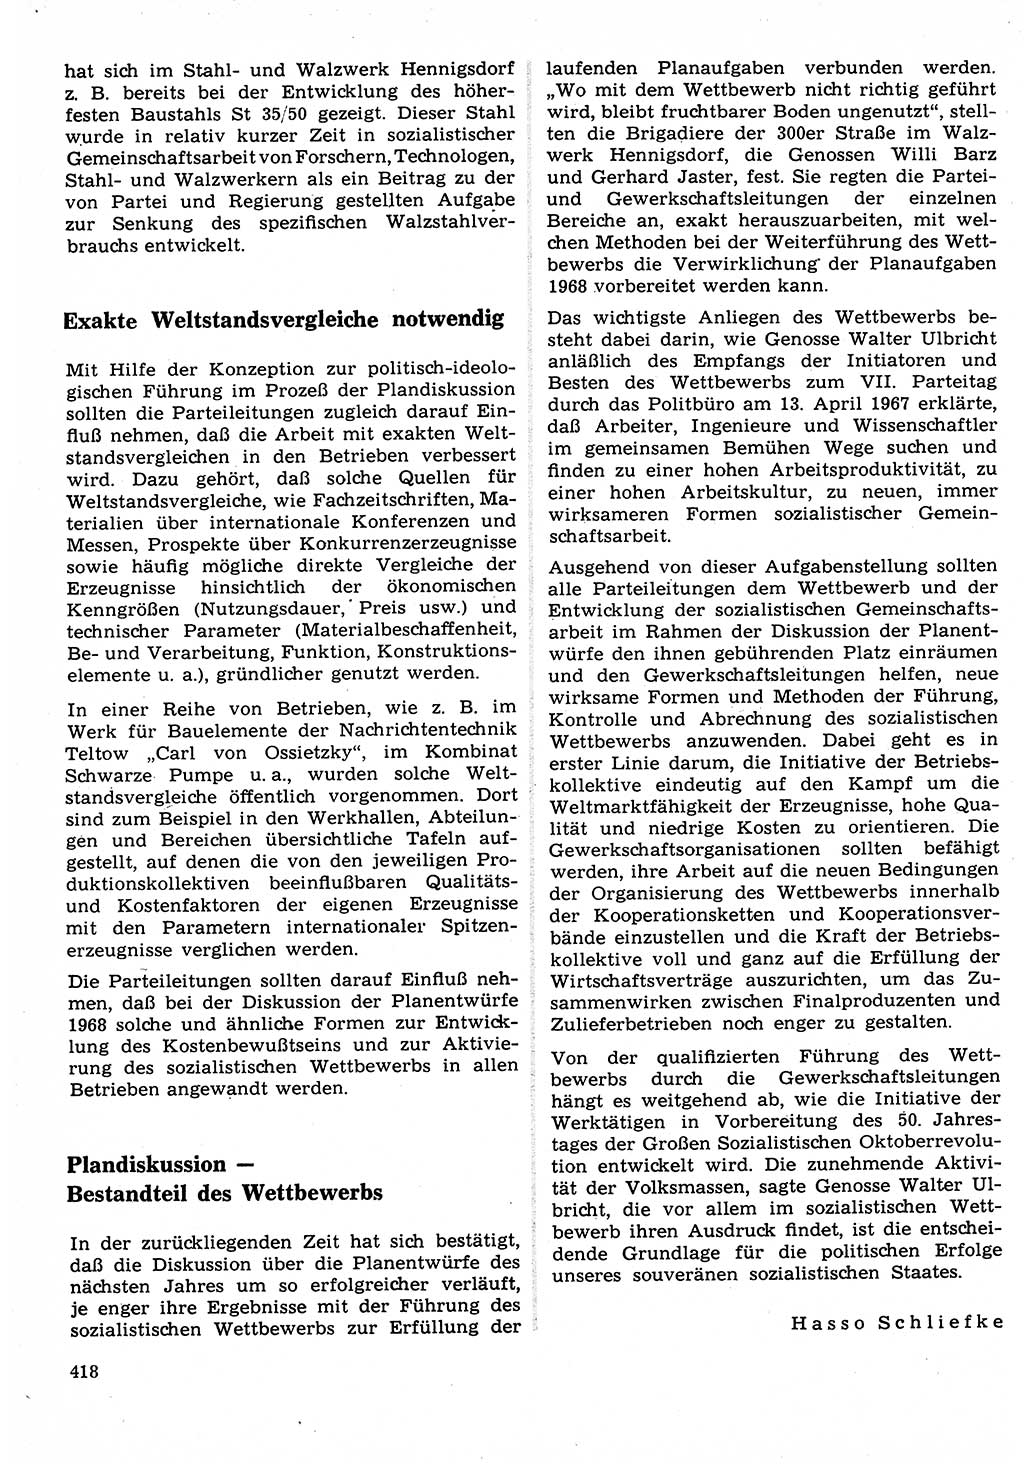 Neuer Weg (NW), Organ des Zentralkomitees (ZK) der SED (Sozialistische Einheitspartei Deutschlands) für Fragen des Parteilebens, 22. Jahrgang [Deutsche Demokratische Republik (DDR)] 1967, Seite 418 (NW ZK SED DDR 1967, S. 418)